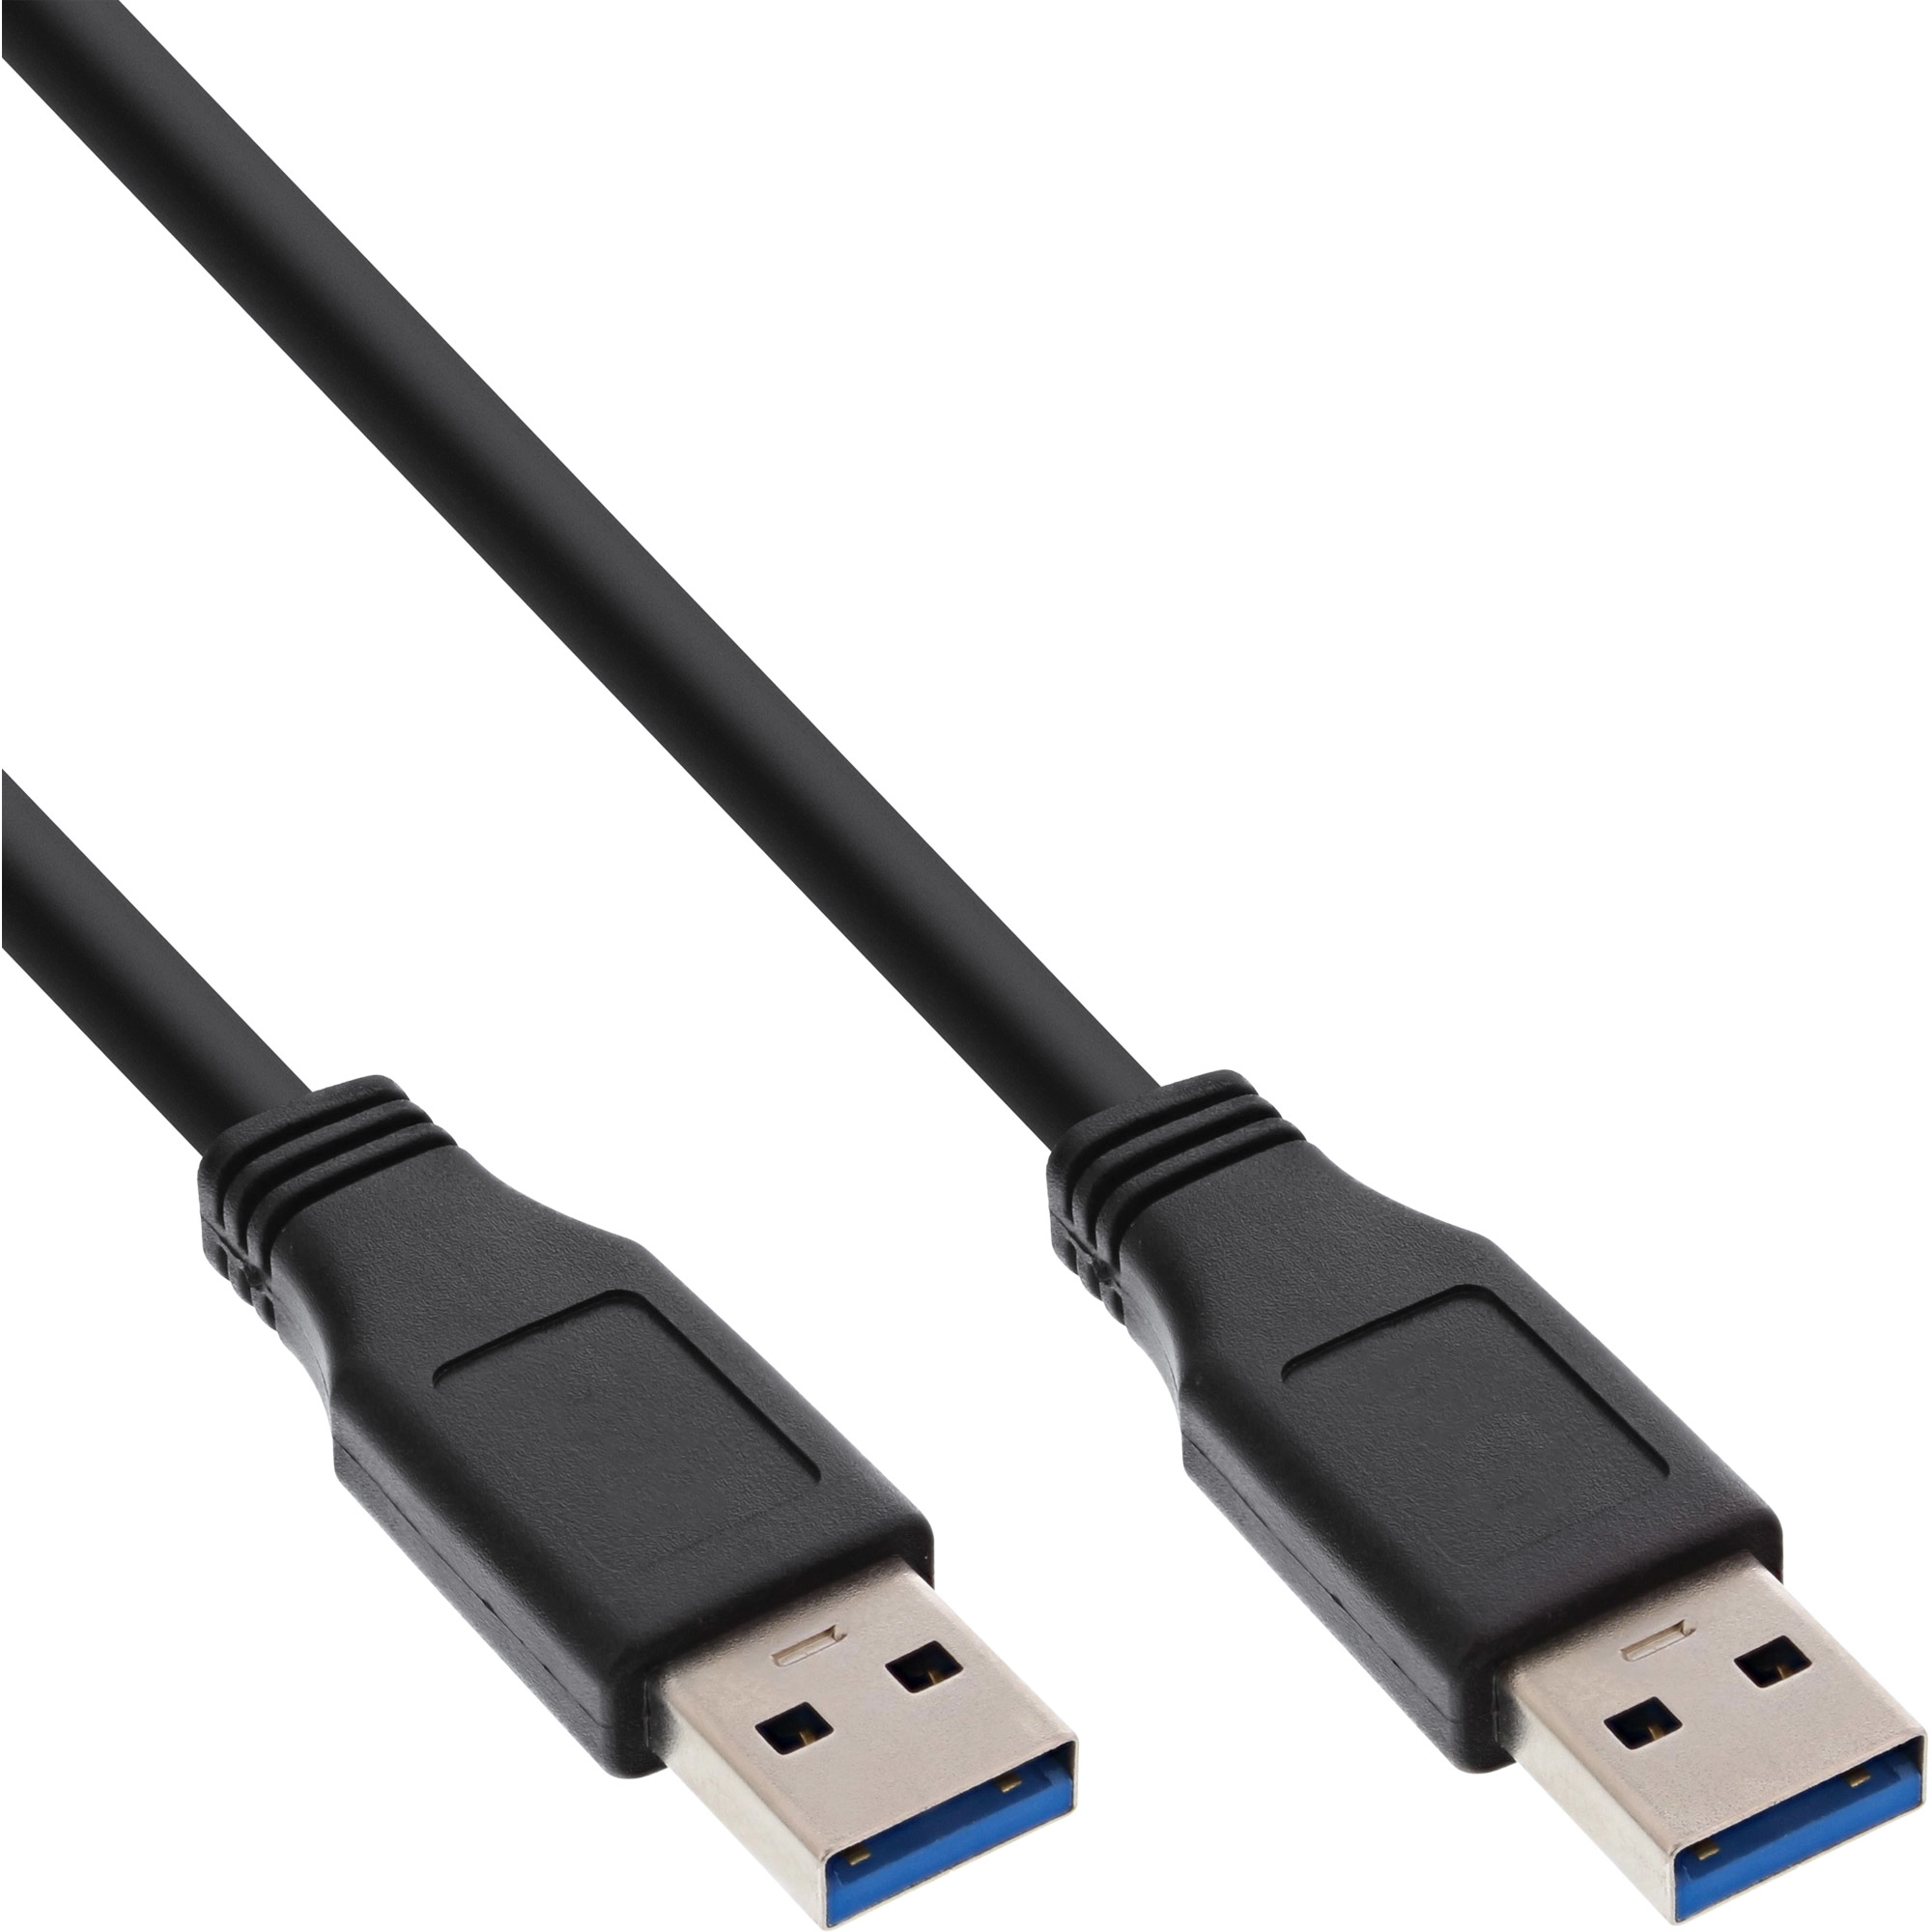 InLine USB 3.0 Kabel - A an A - schwarz - 1,5m